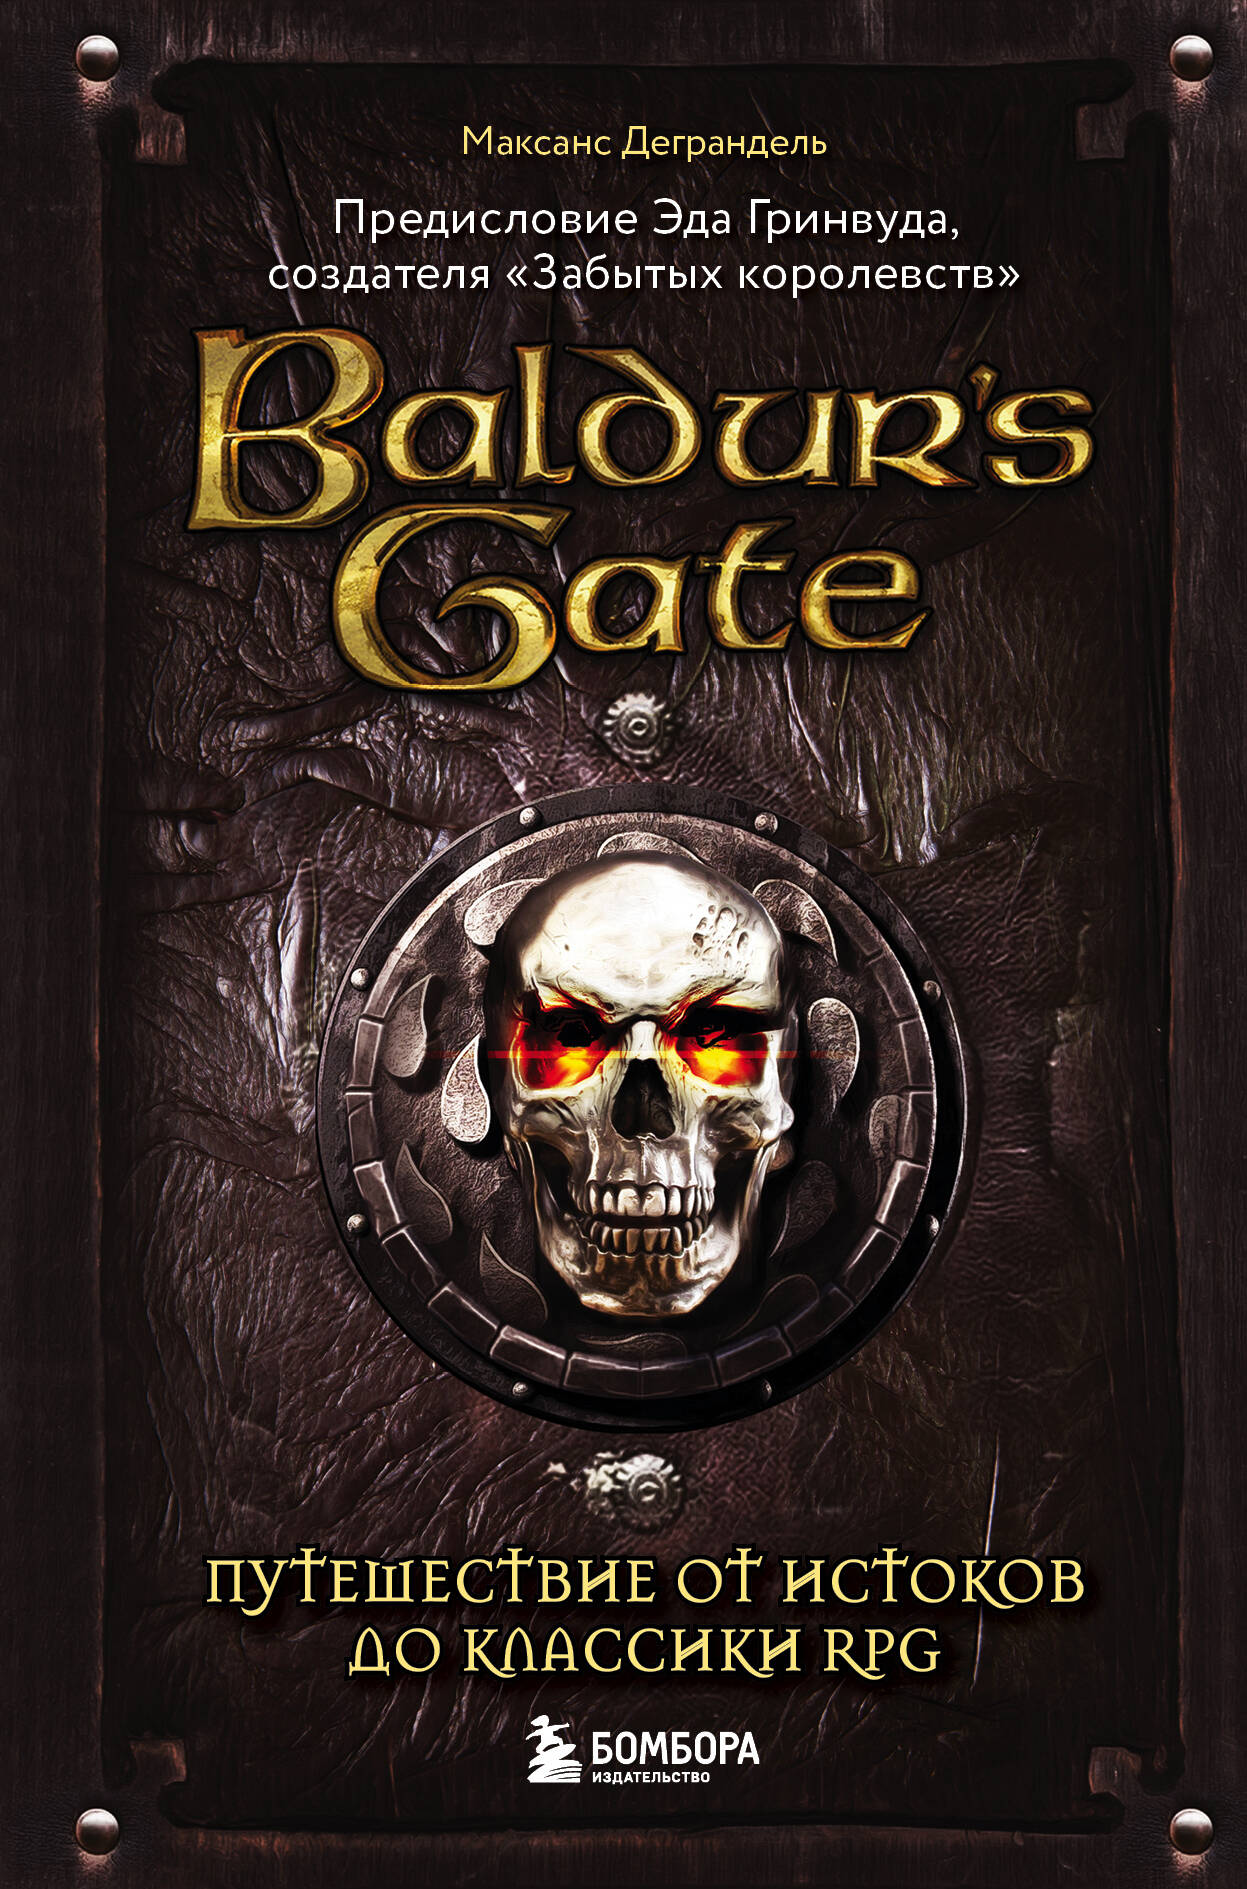 Деграндель Максанс Baldurs Gate. Путешествие от истоков до классики RPG